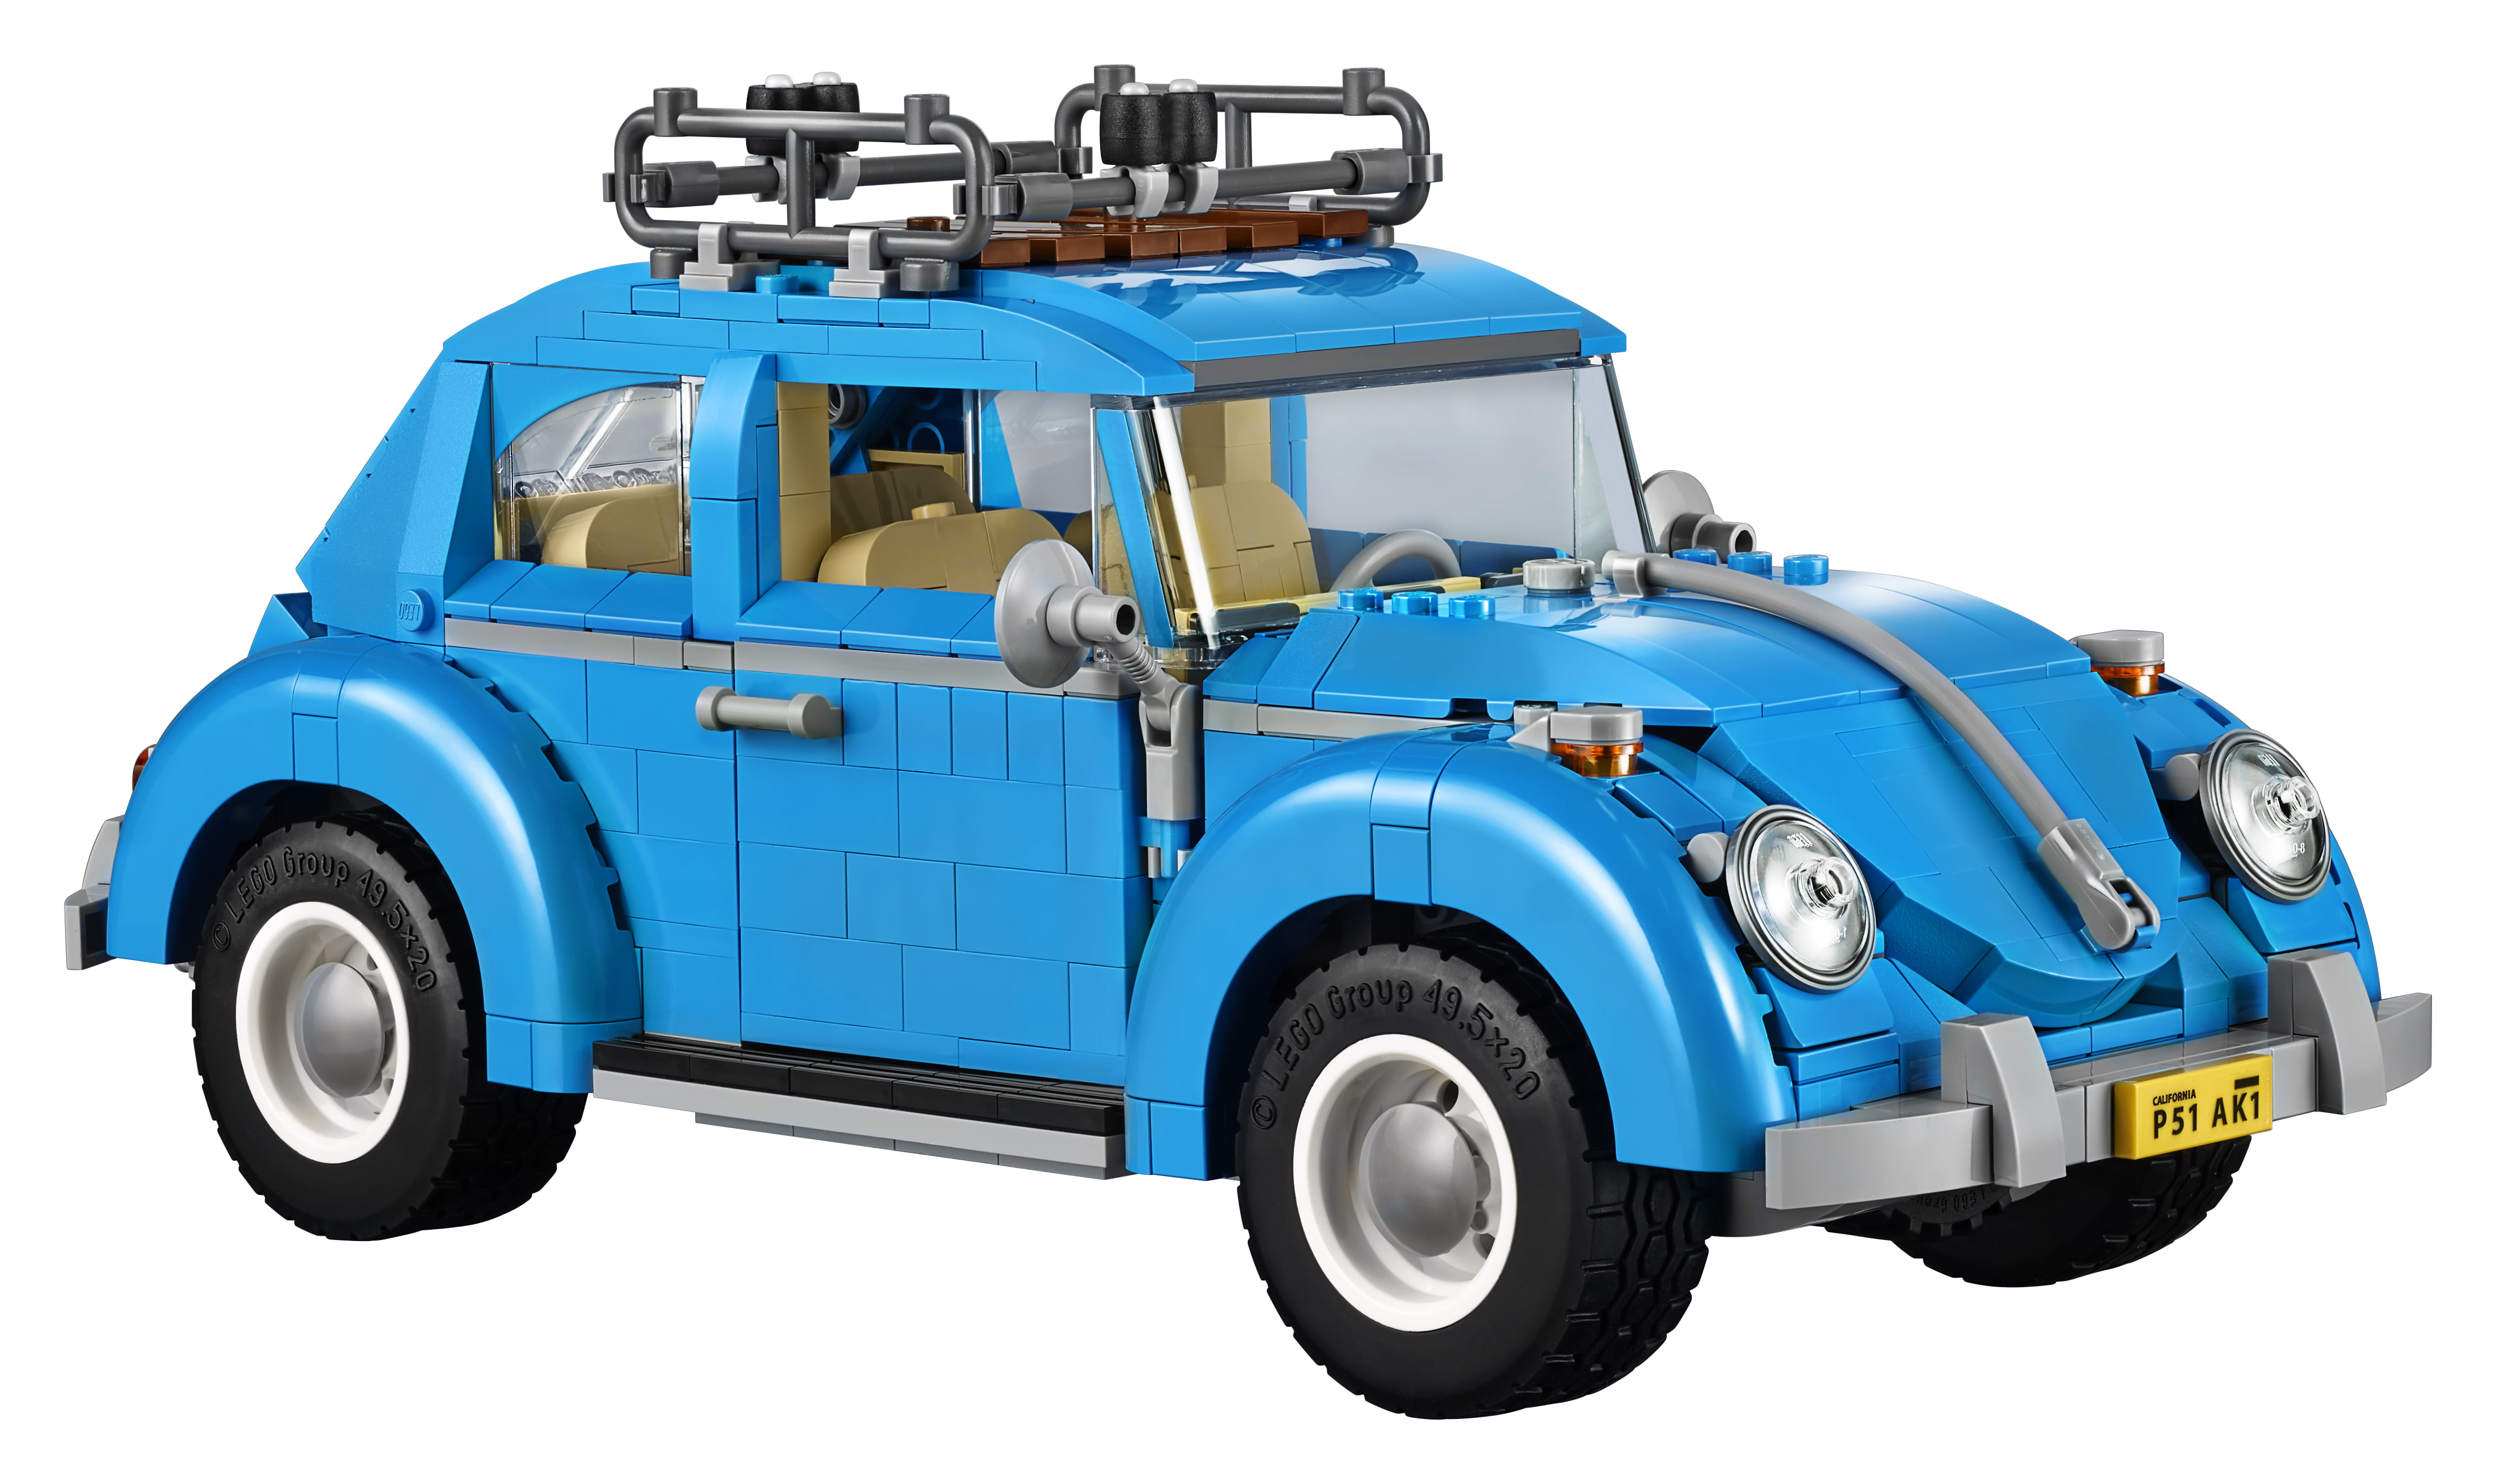 Creator Expert Volkswagen Beetle 10252 - Walmart.com